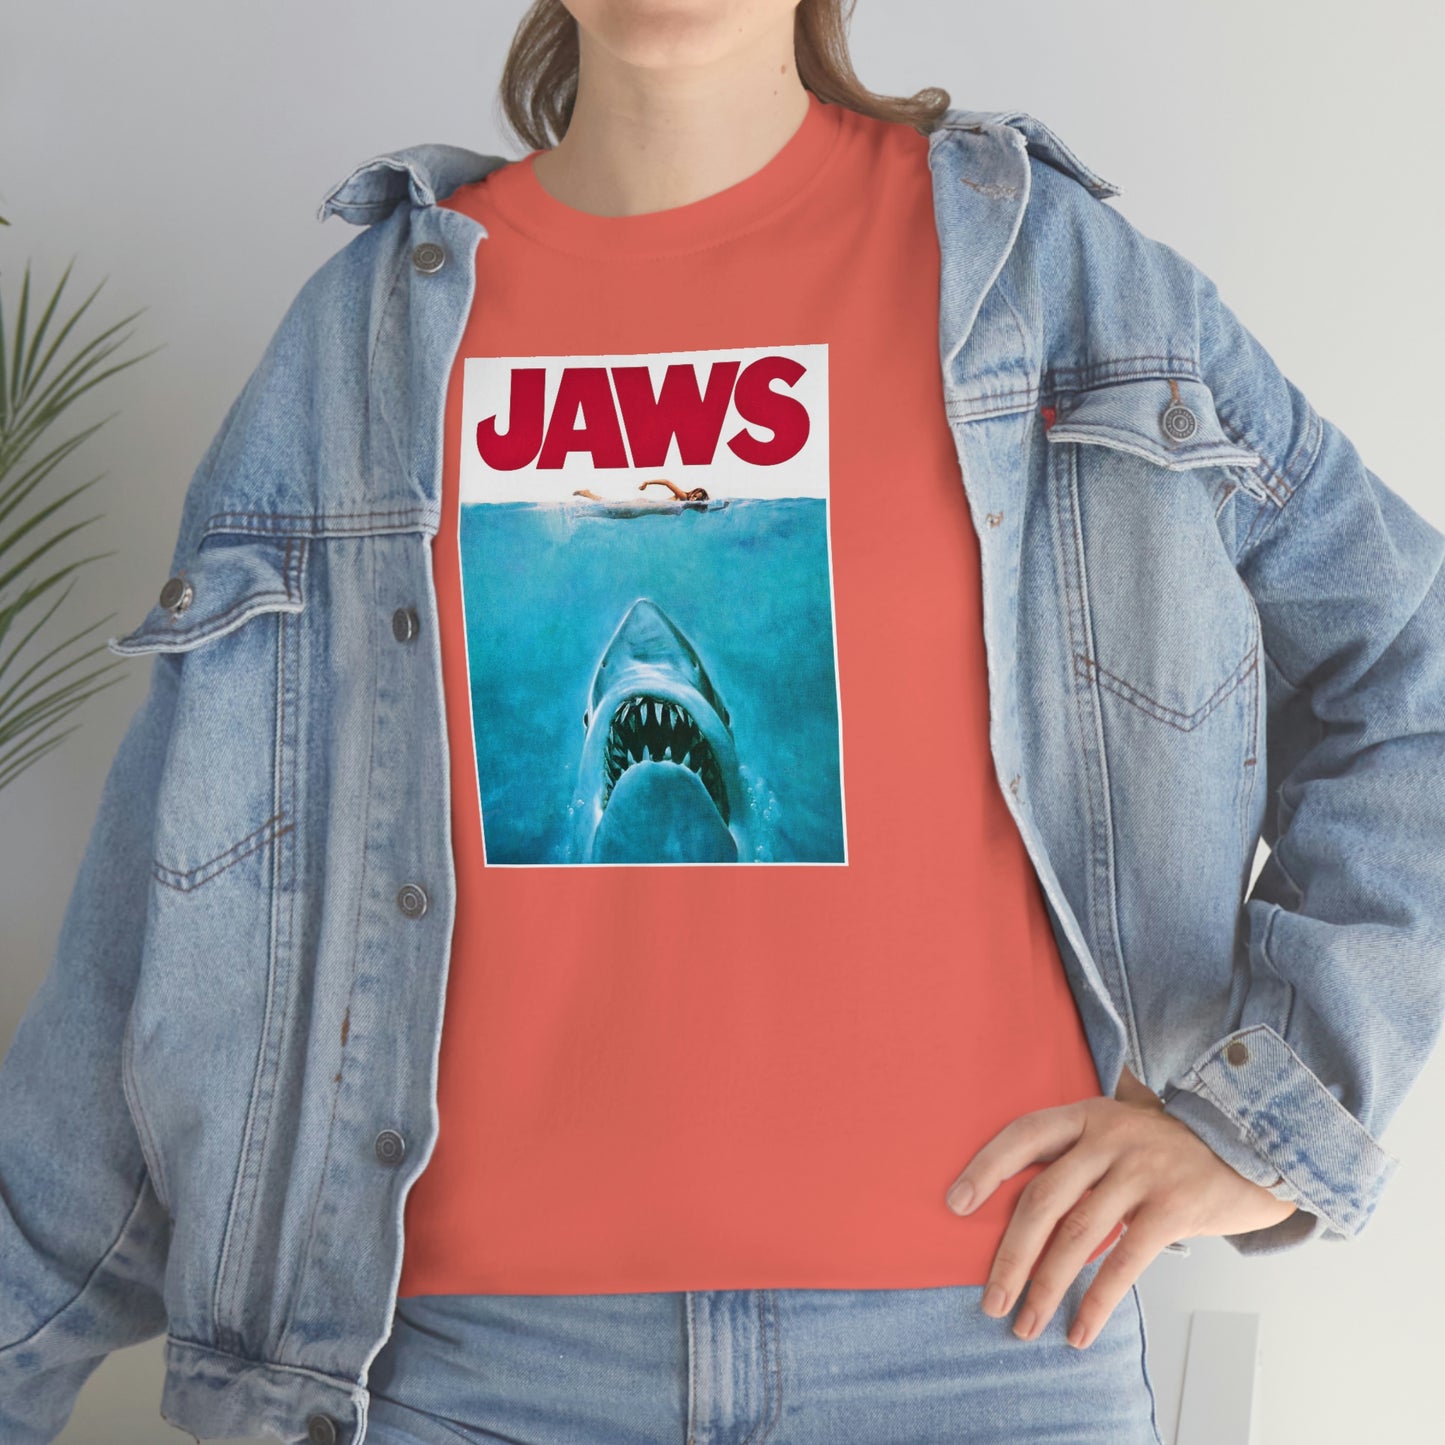 Jaws T-Shirt